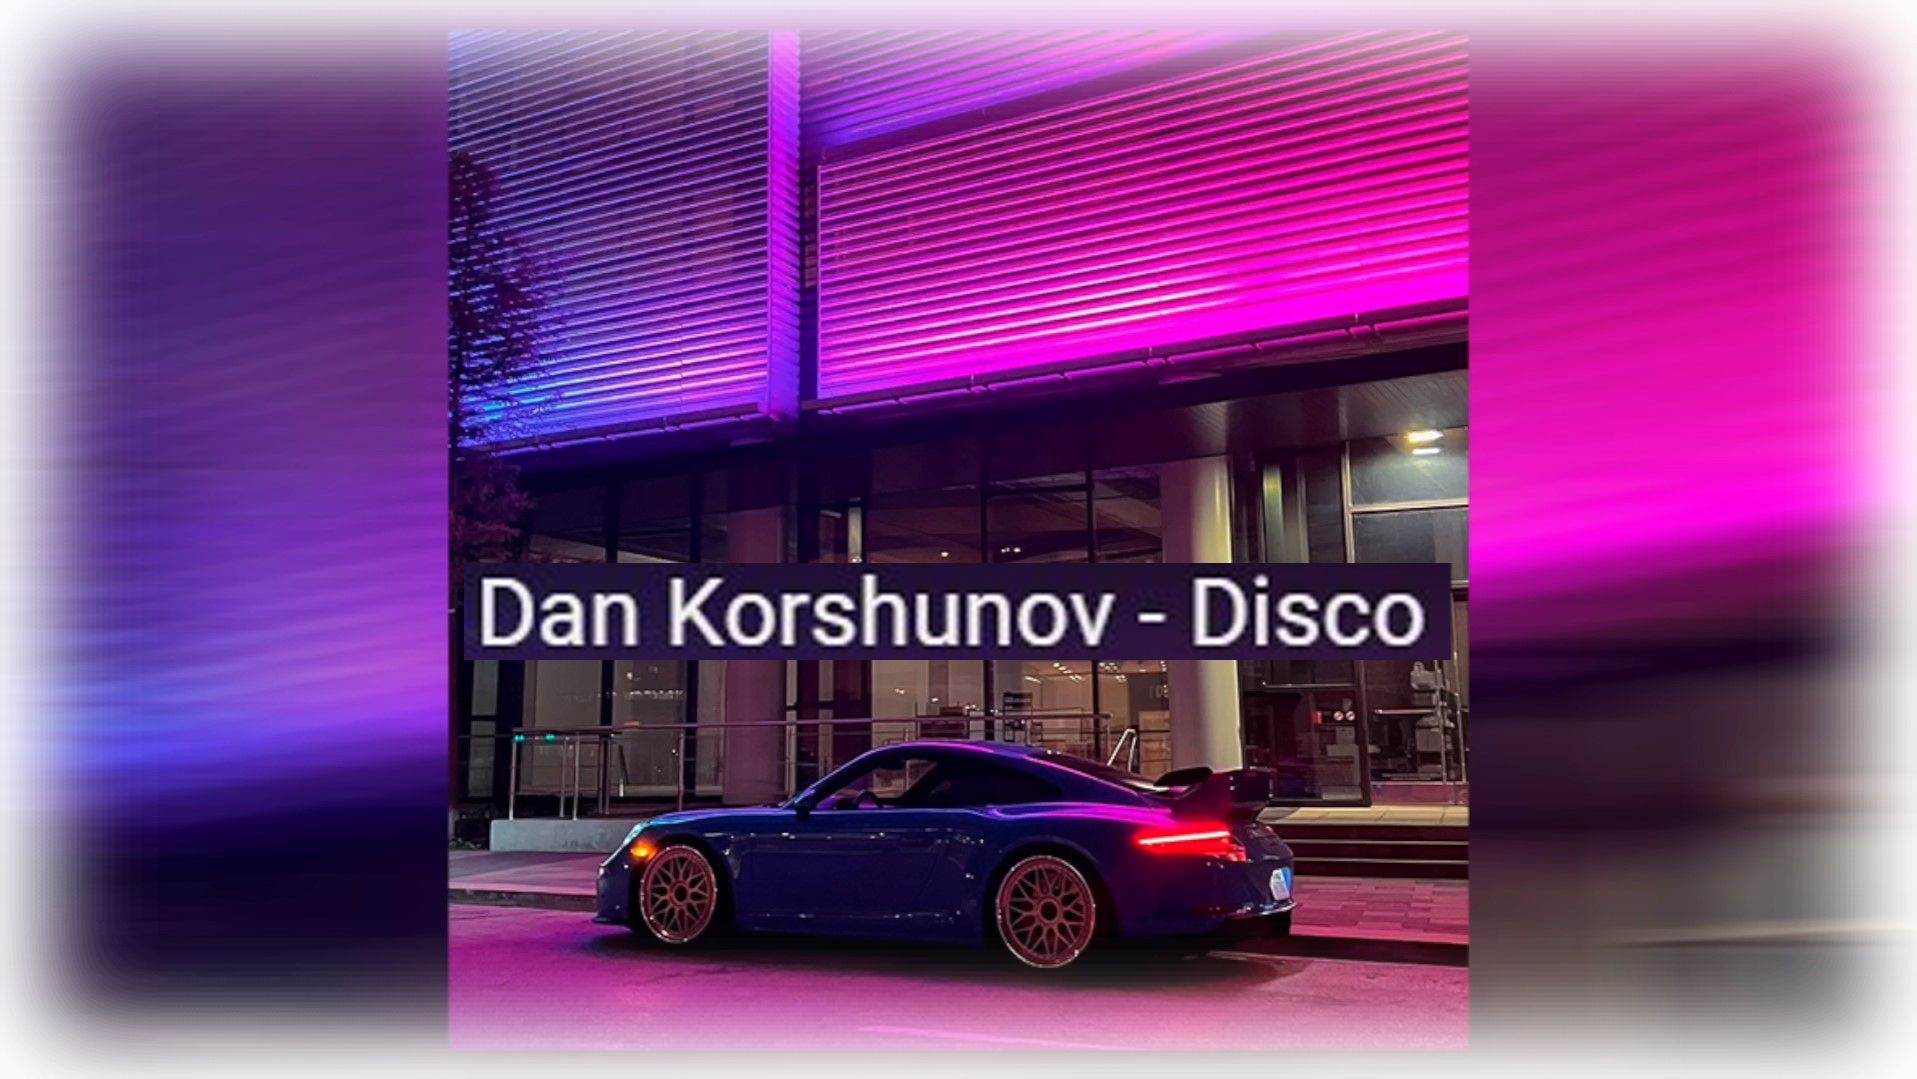 dan-korshunov-disco-perevod-teksta-na-russkij-yazyk